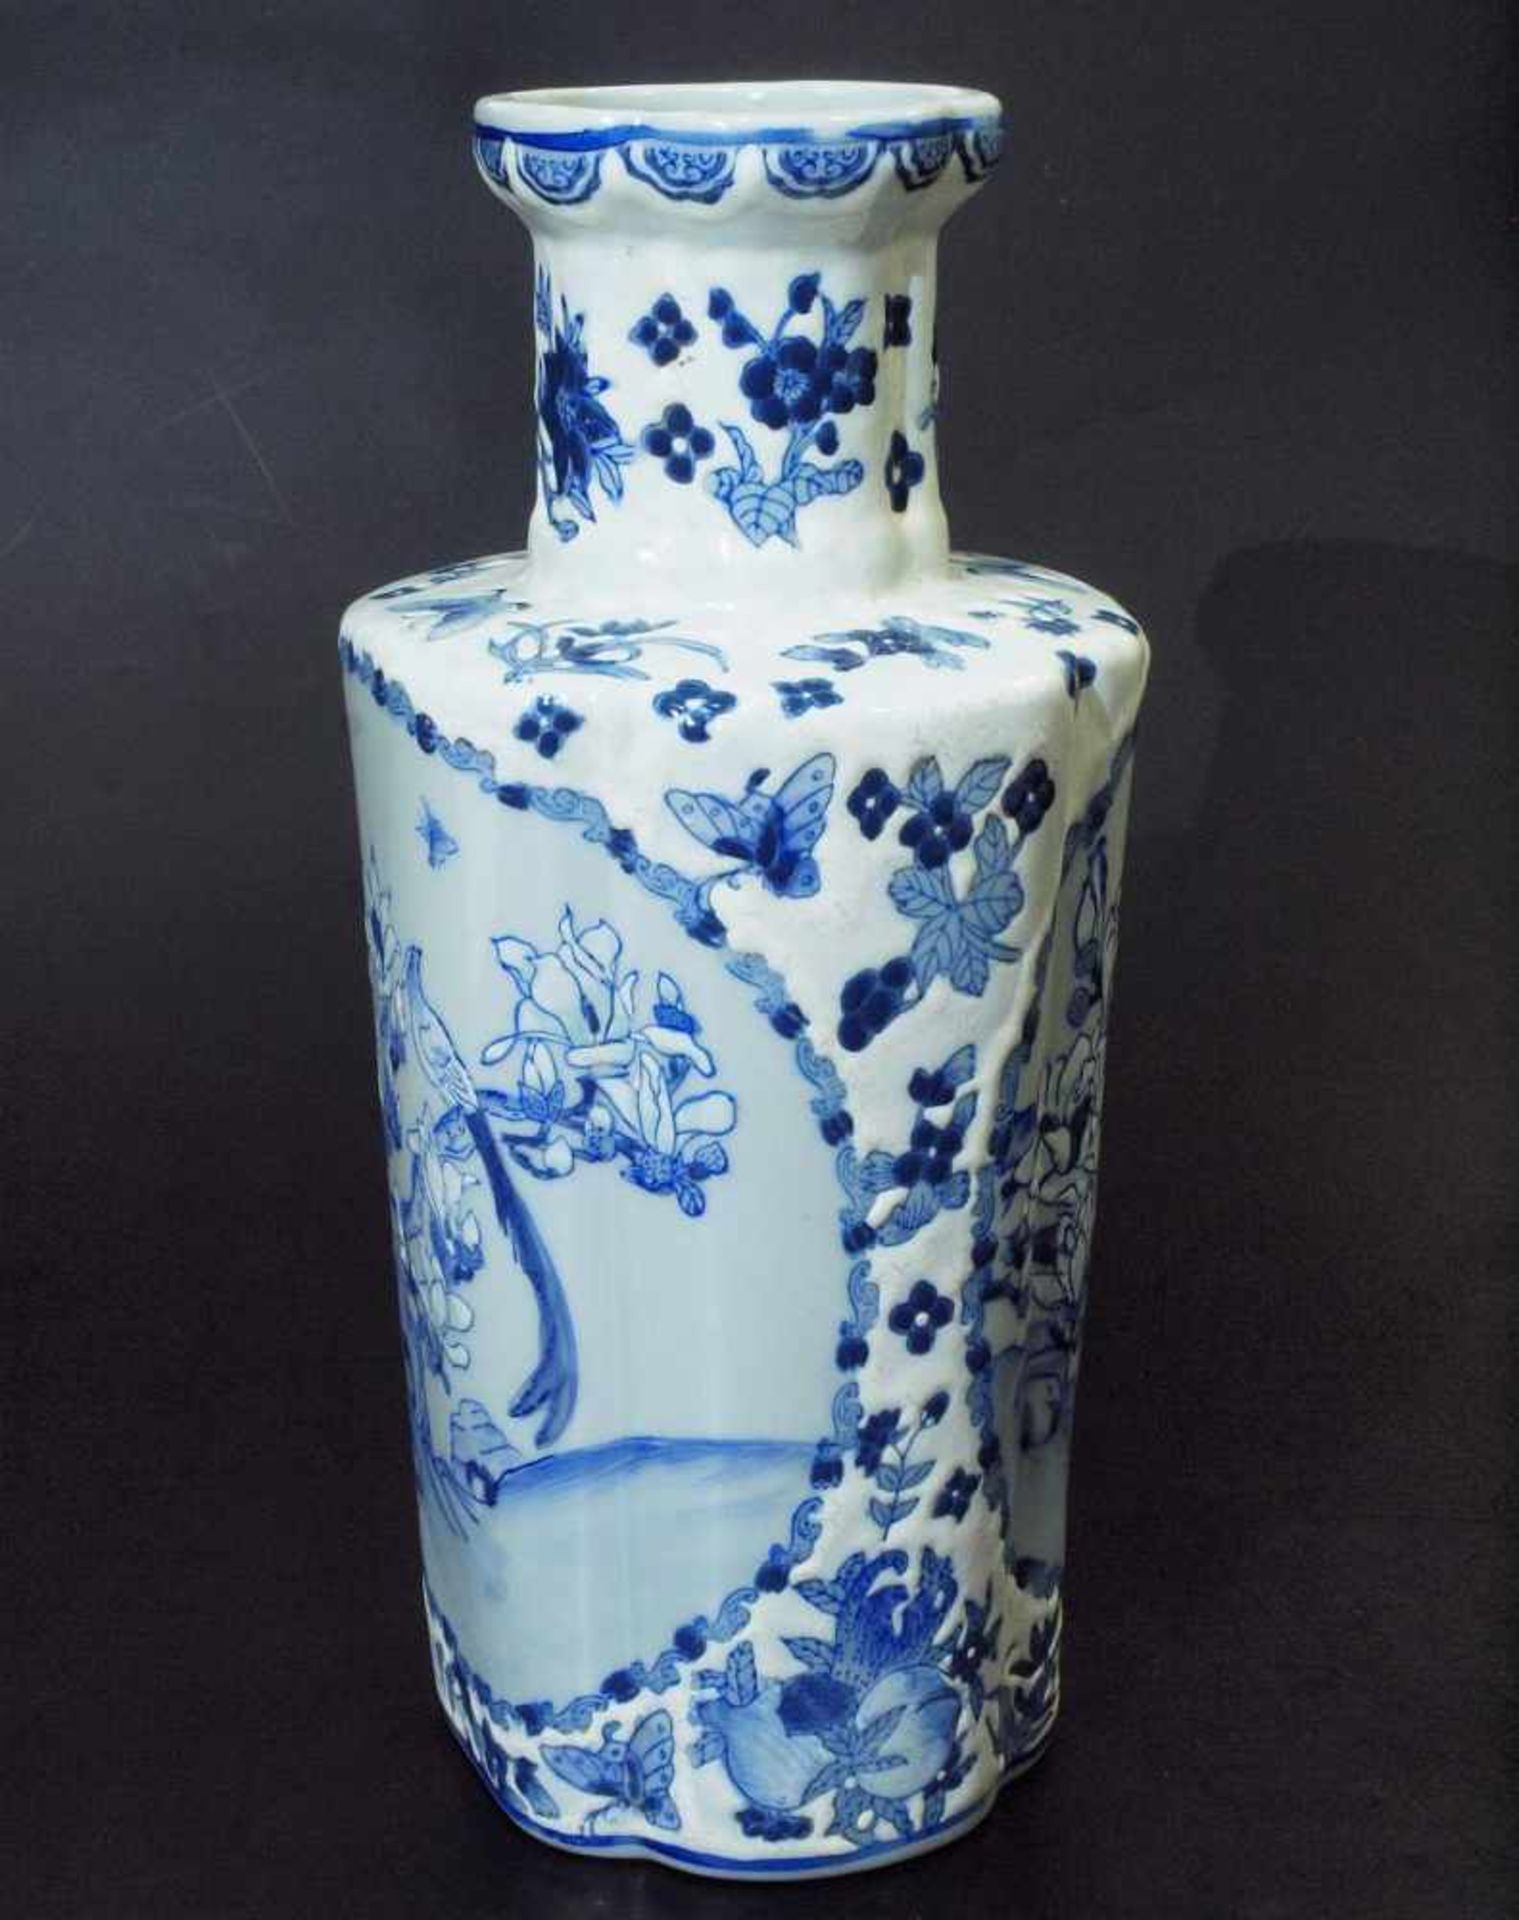 Vase. Vase. Asien, 19. Jahrhundert. Reliefartig ausgearbeitetes florales Dekor in blau-weiß, - Image 5 of 7